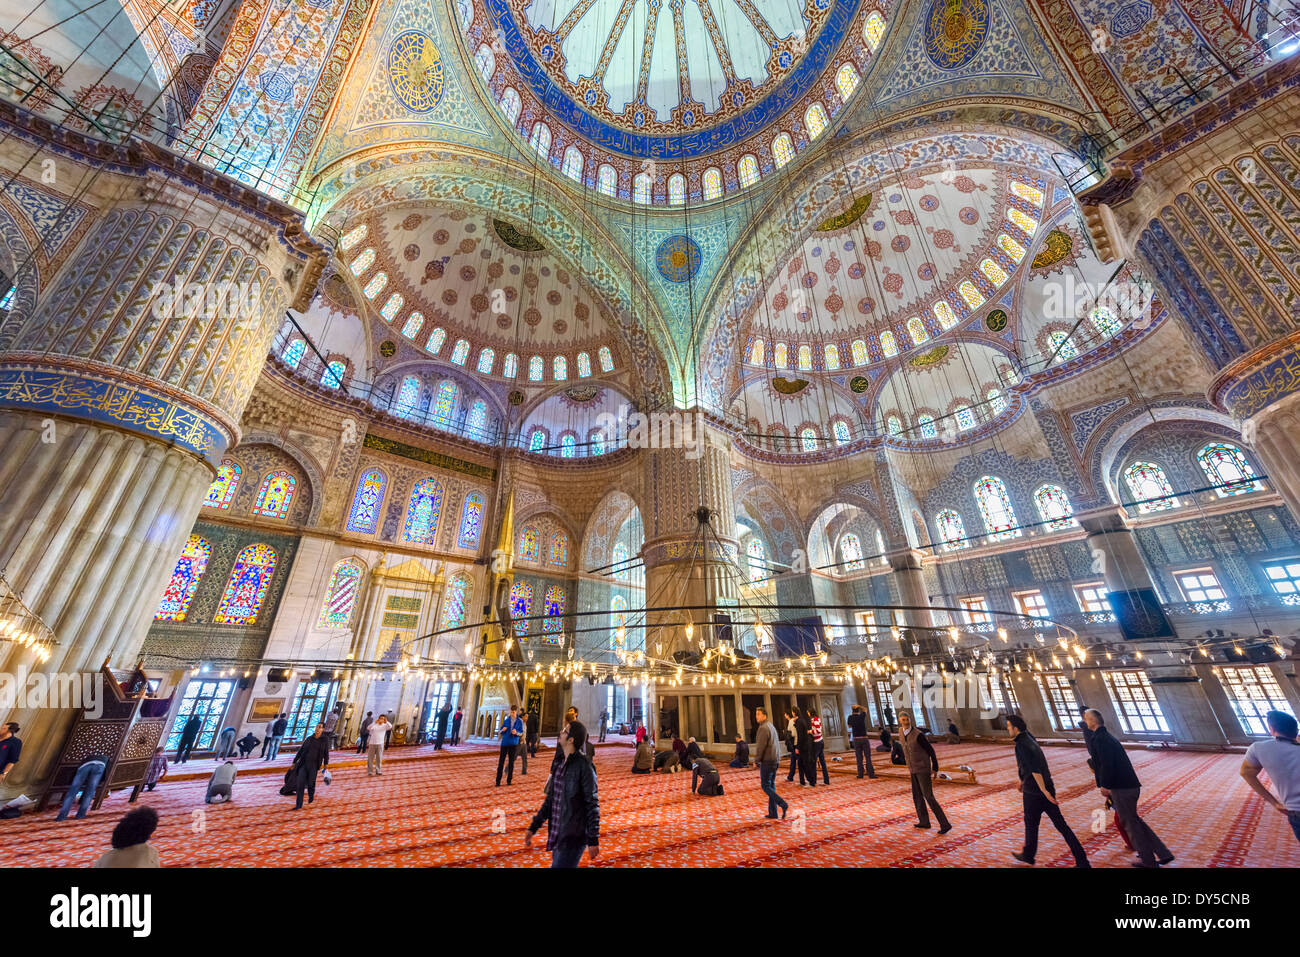 Intérieur de la Mosquée Bleue (Sultanahmet Camii), Sultanahmet, Istanbul, Turquie Banque D'Images